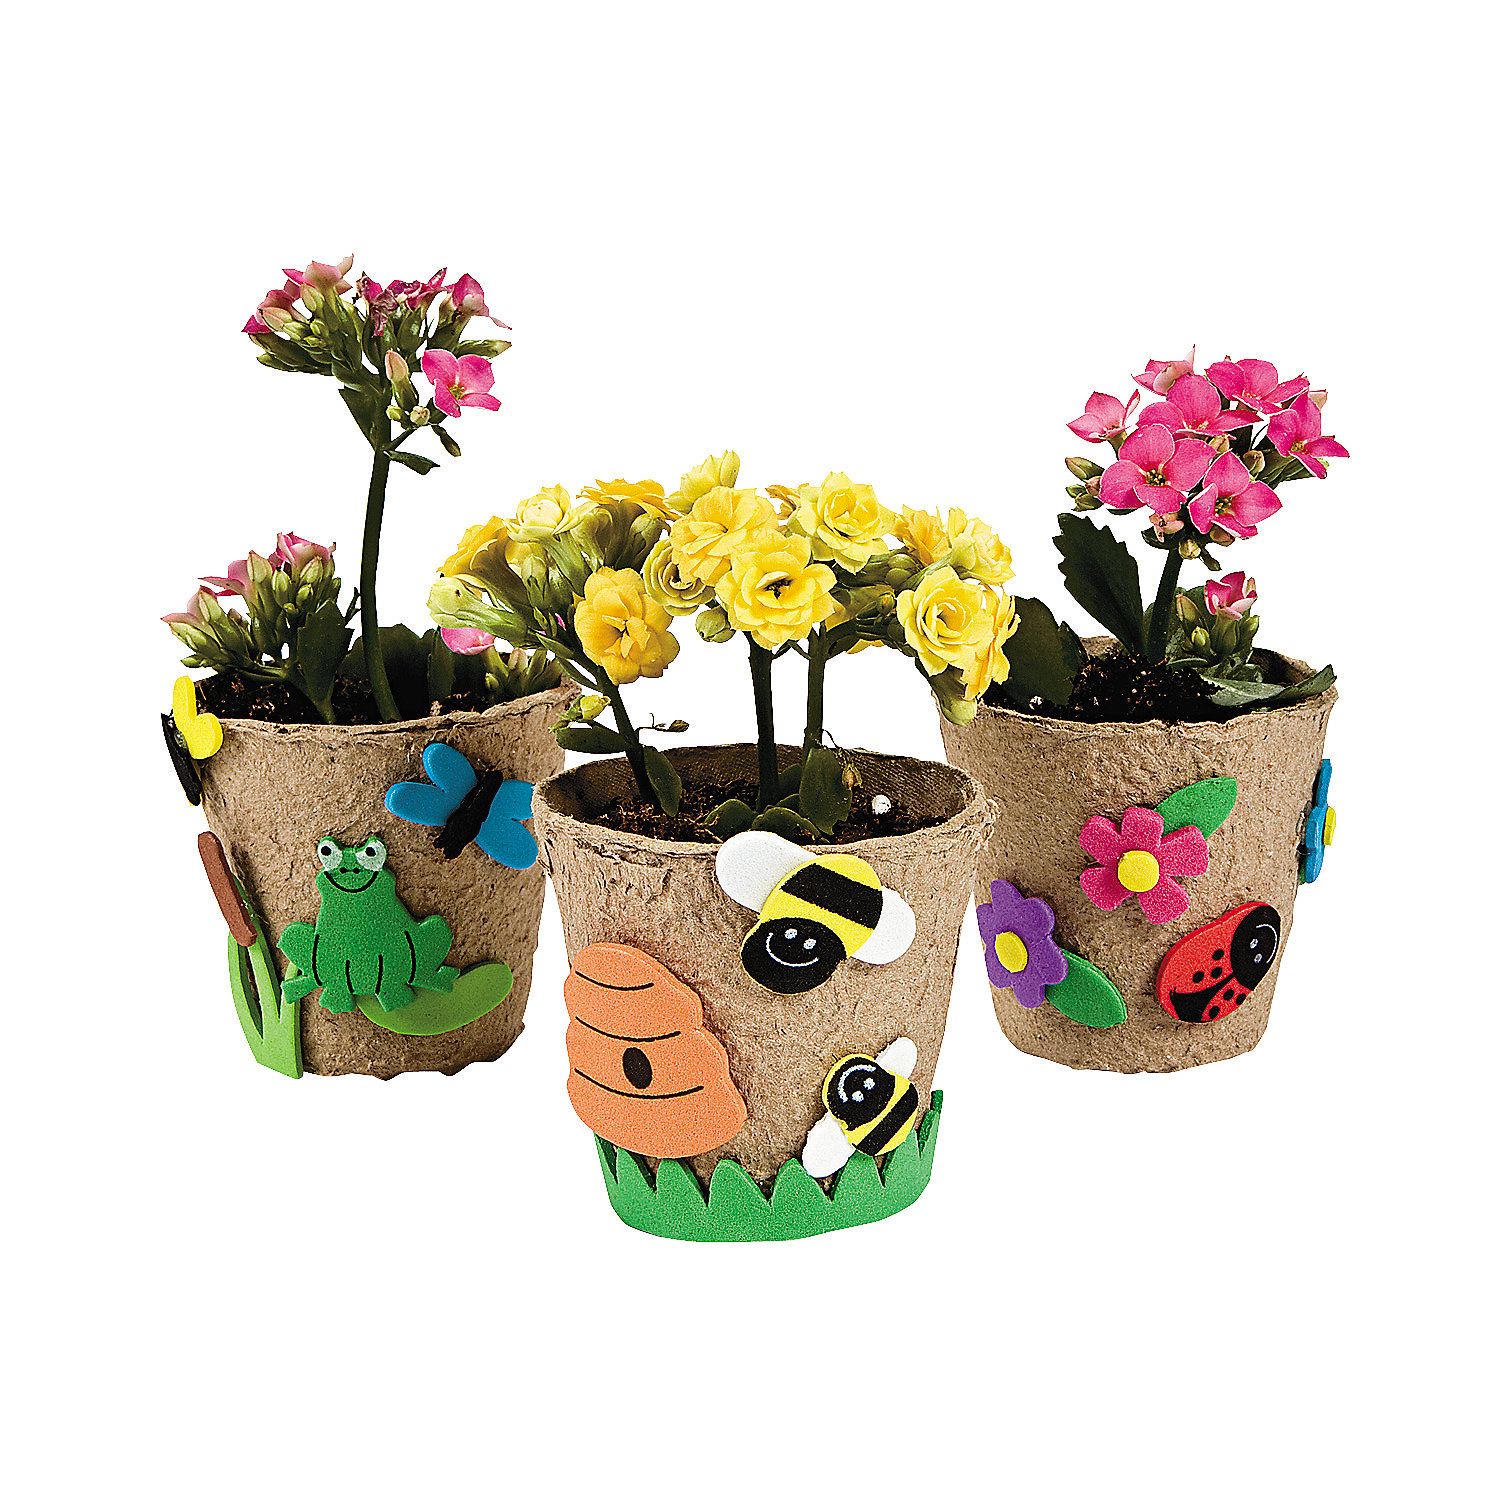 Embellished Flower Pot Craft Tutorial Paisley Petal Events Flower